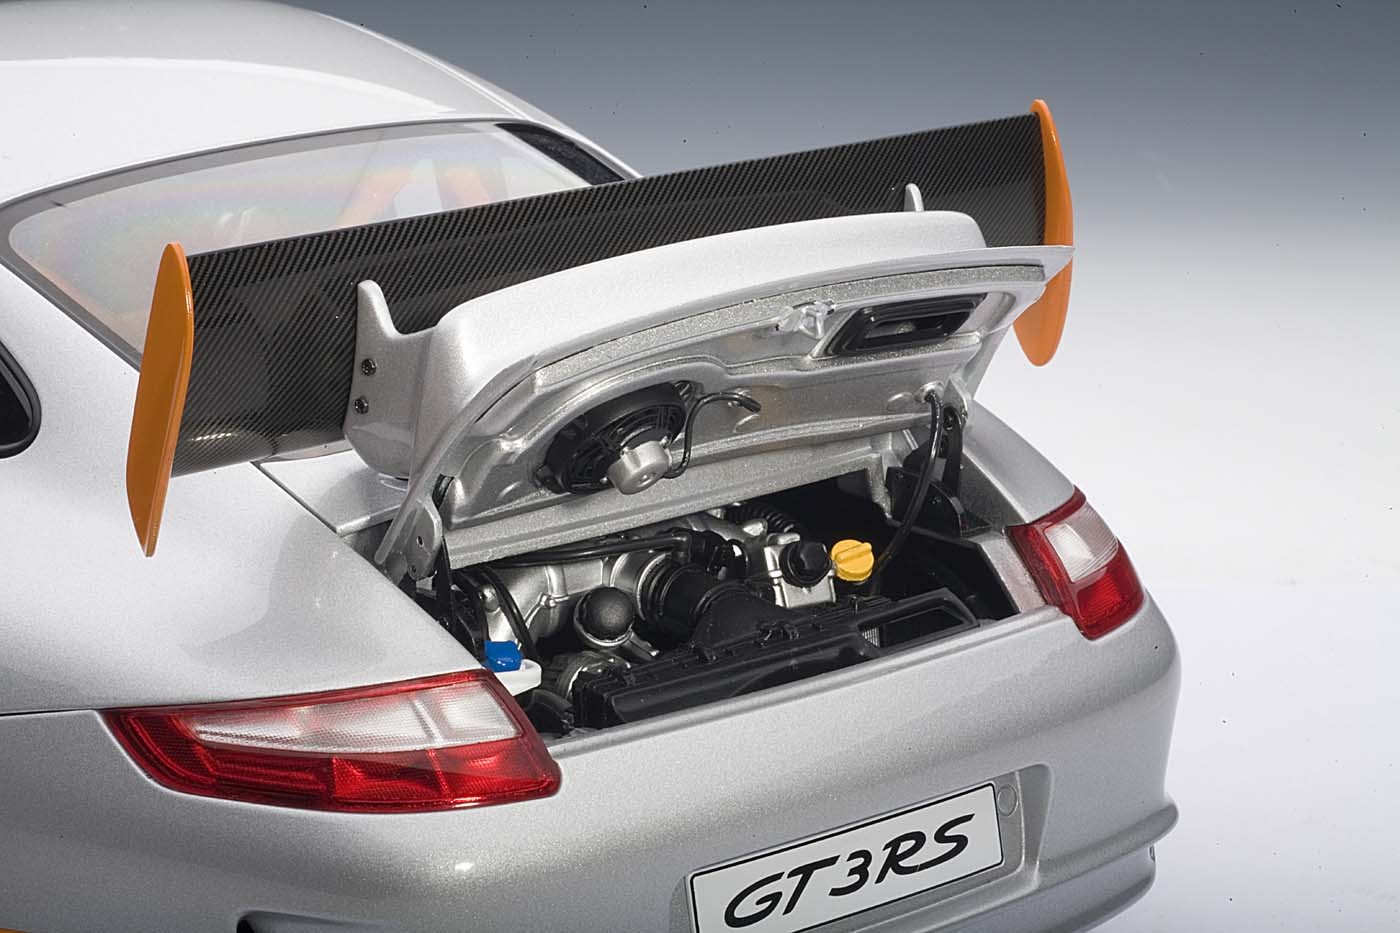 AUTOart die-cast model Porsche 911 (977) GT3 RS Silver w/Orange